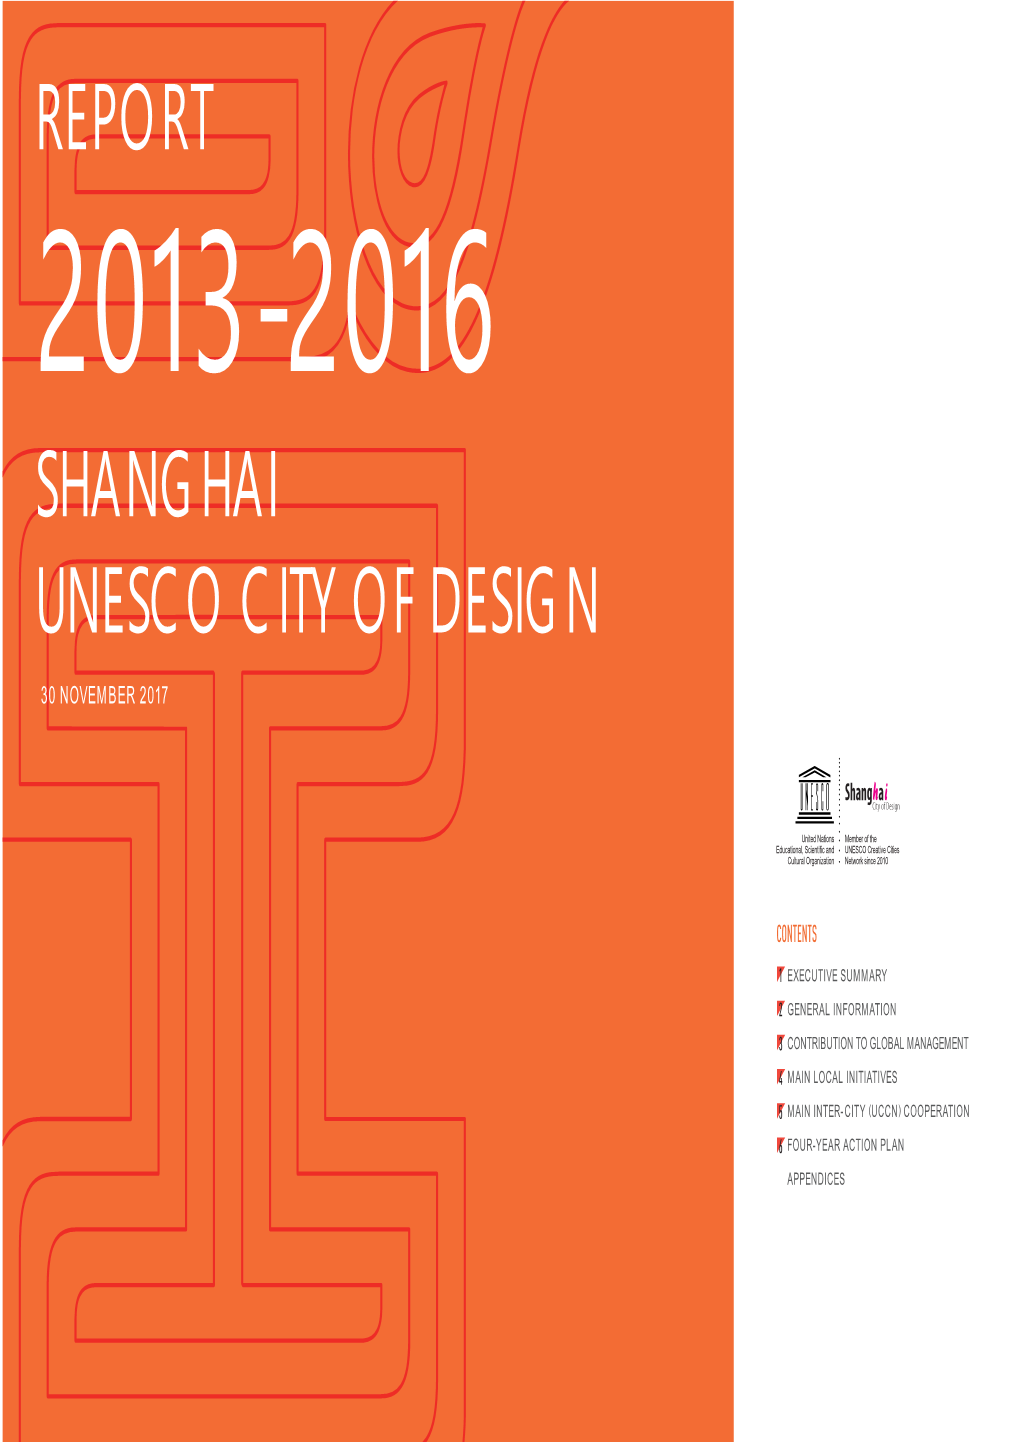 Report Shanghai Unesco City of Design